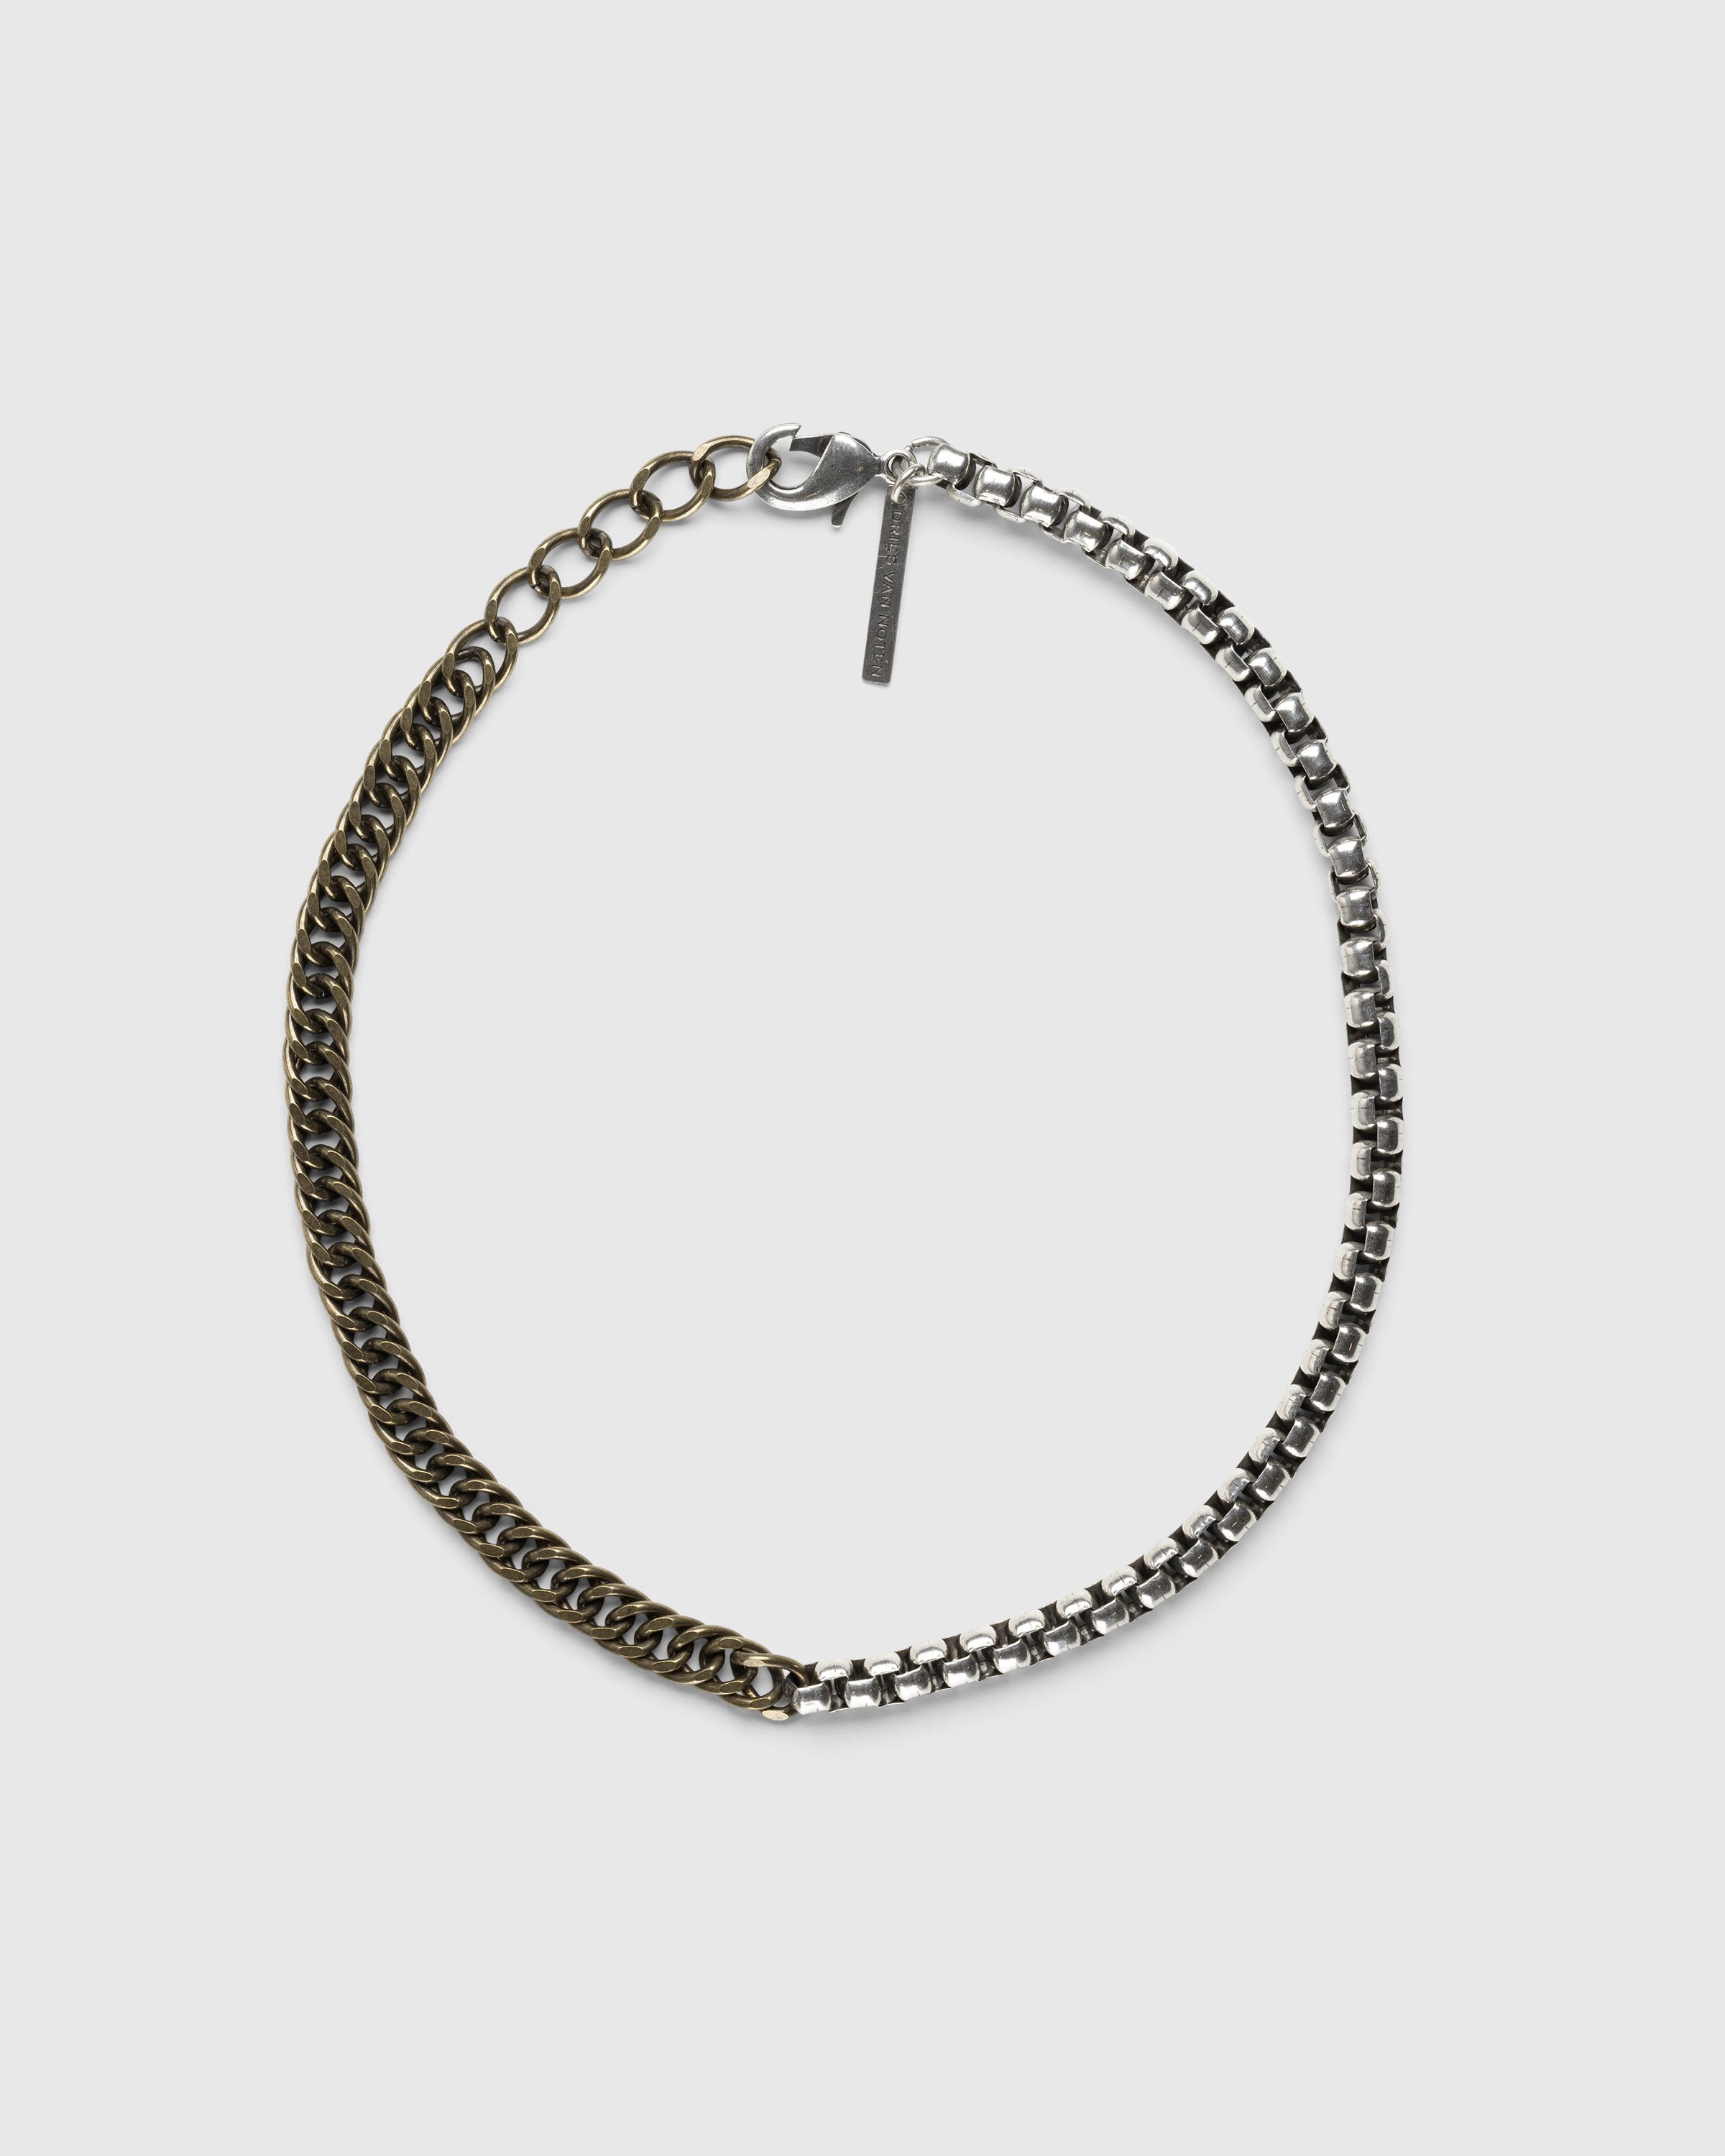 Dries van Noten – M232-206 Necklace Black | Highsnobiety Shop